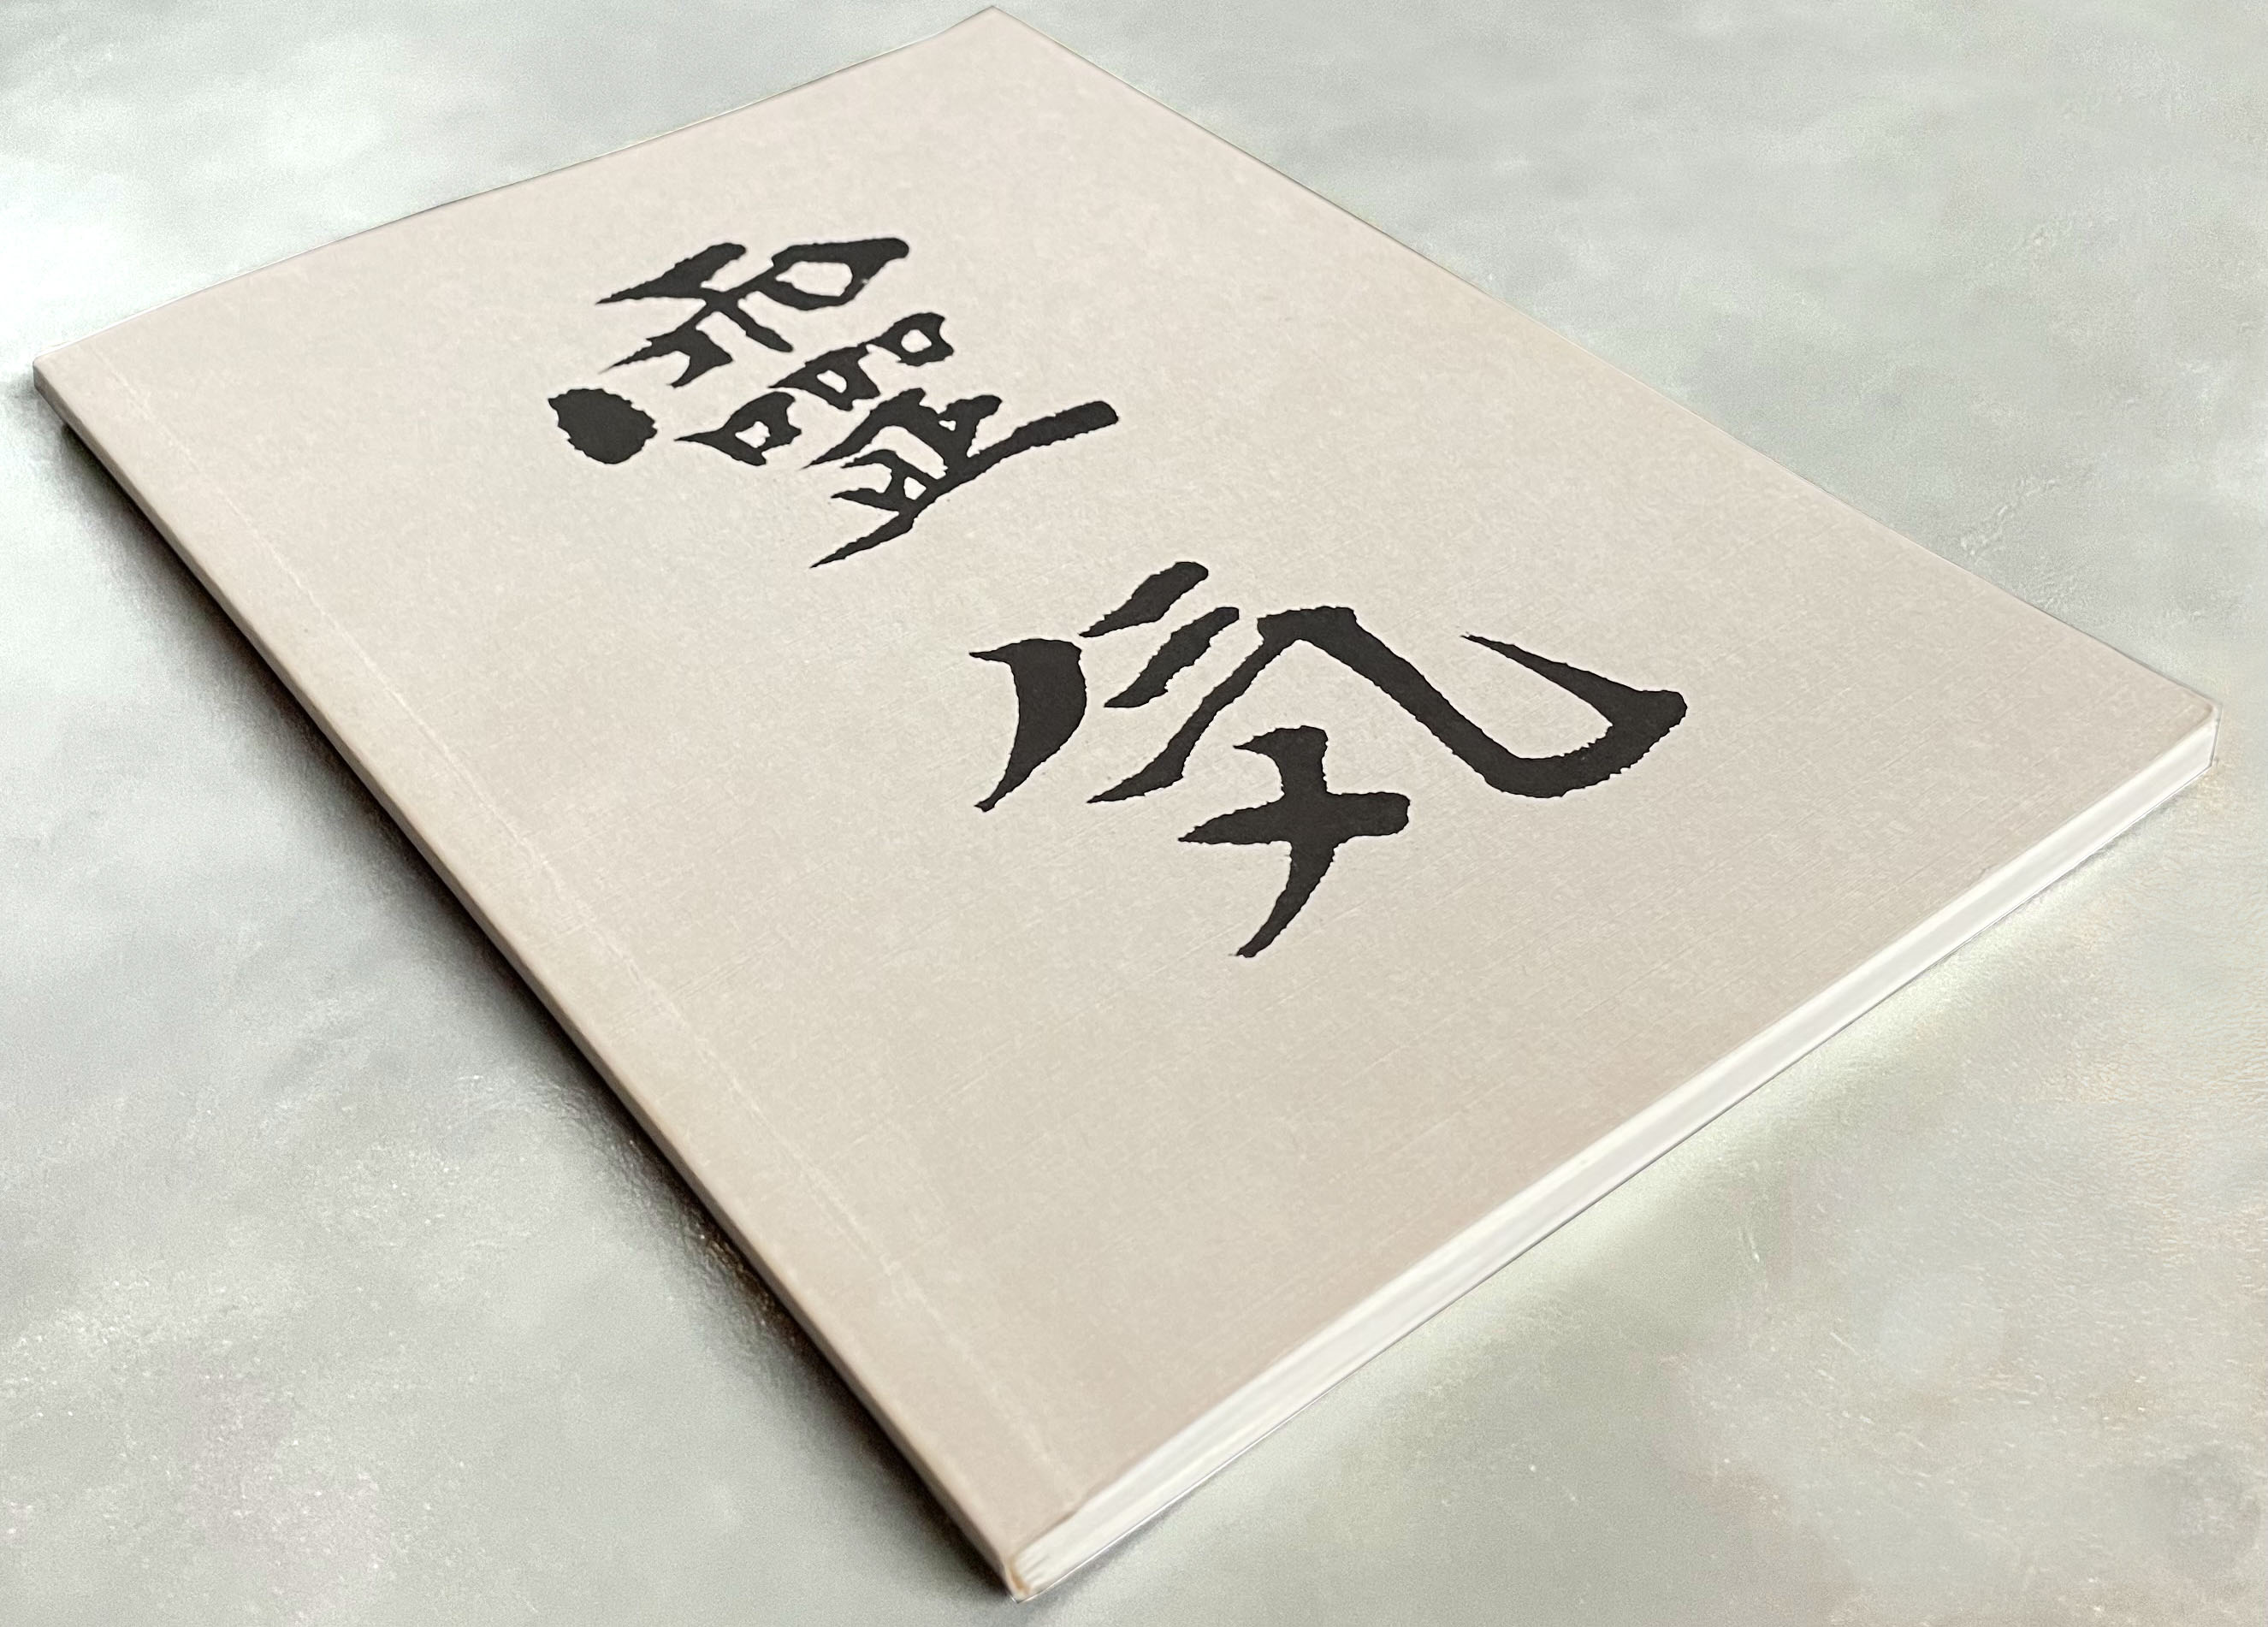 Foto van de cover van het oorspronkelijke boek uit 1982, Reiki: Het Grijze Boek van Alice Takata Furumoto, copyright 1982